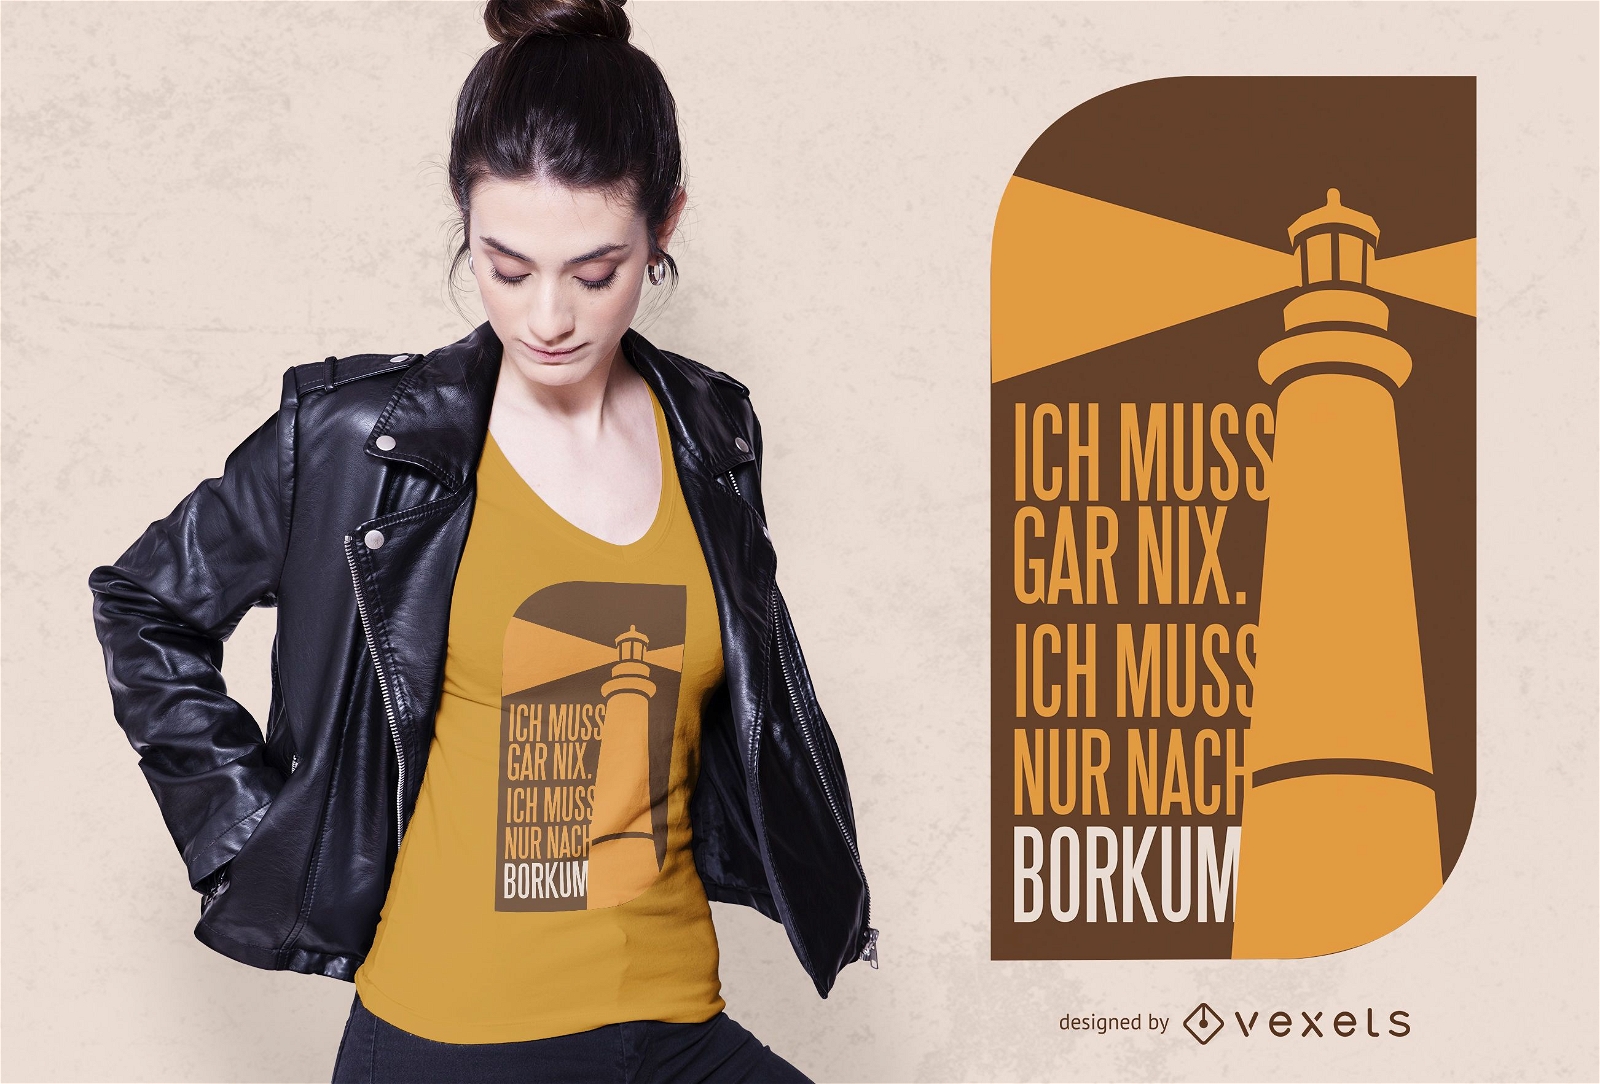 Borkum quote t-shirt design